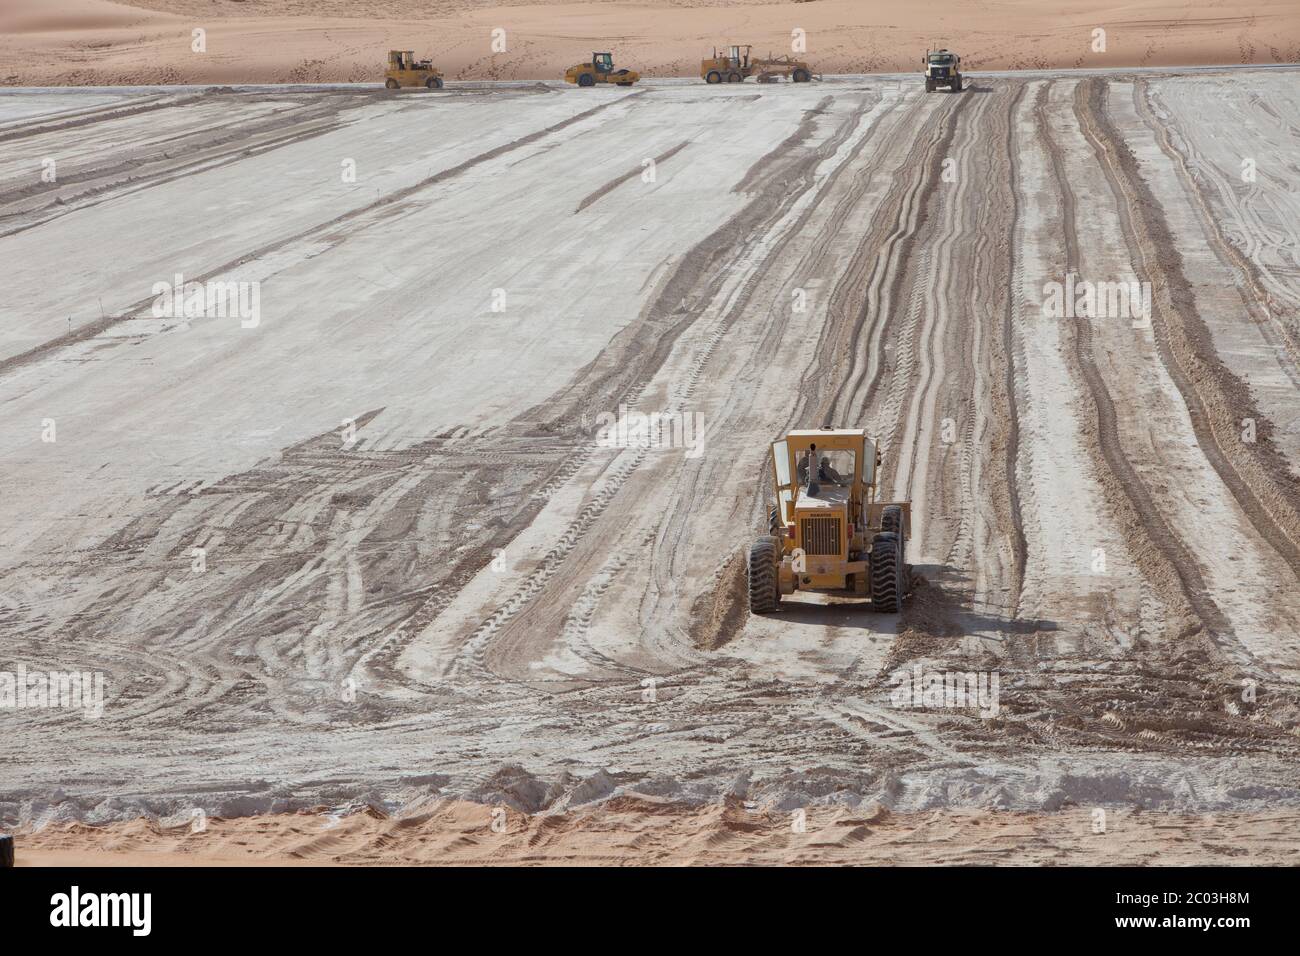 Schwere Ausrüstung, die Gips ausstreut, um eine Grundlage für eine Ölanlage in der Sahara zu bilden. Stockfoto